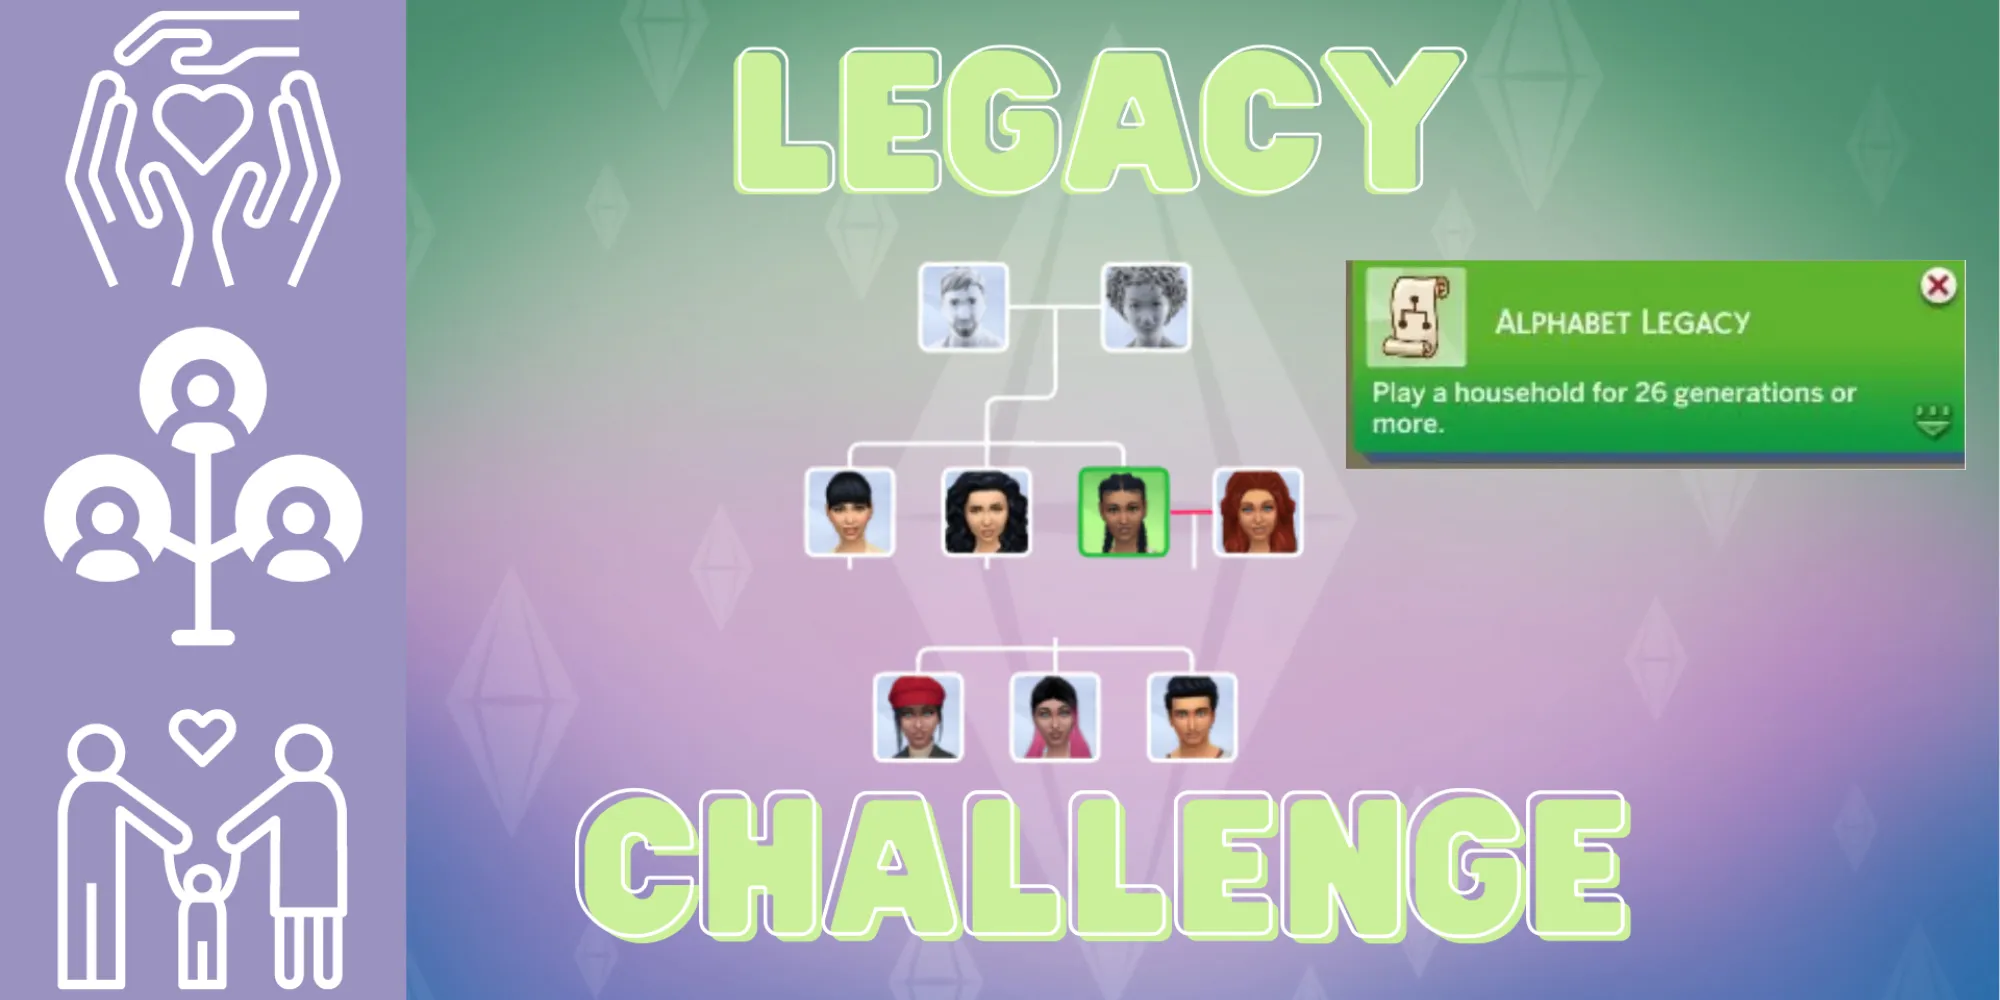 アルファベットレガシーチャレンジに関連するThe Sims 4の家系図